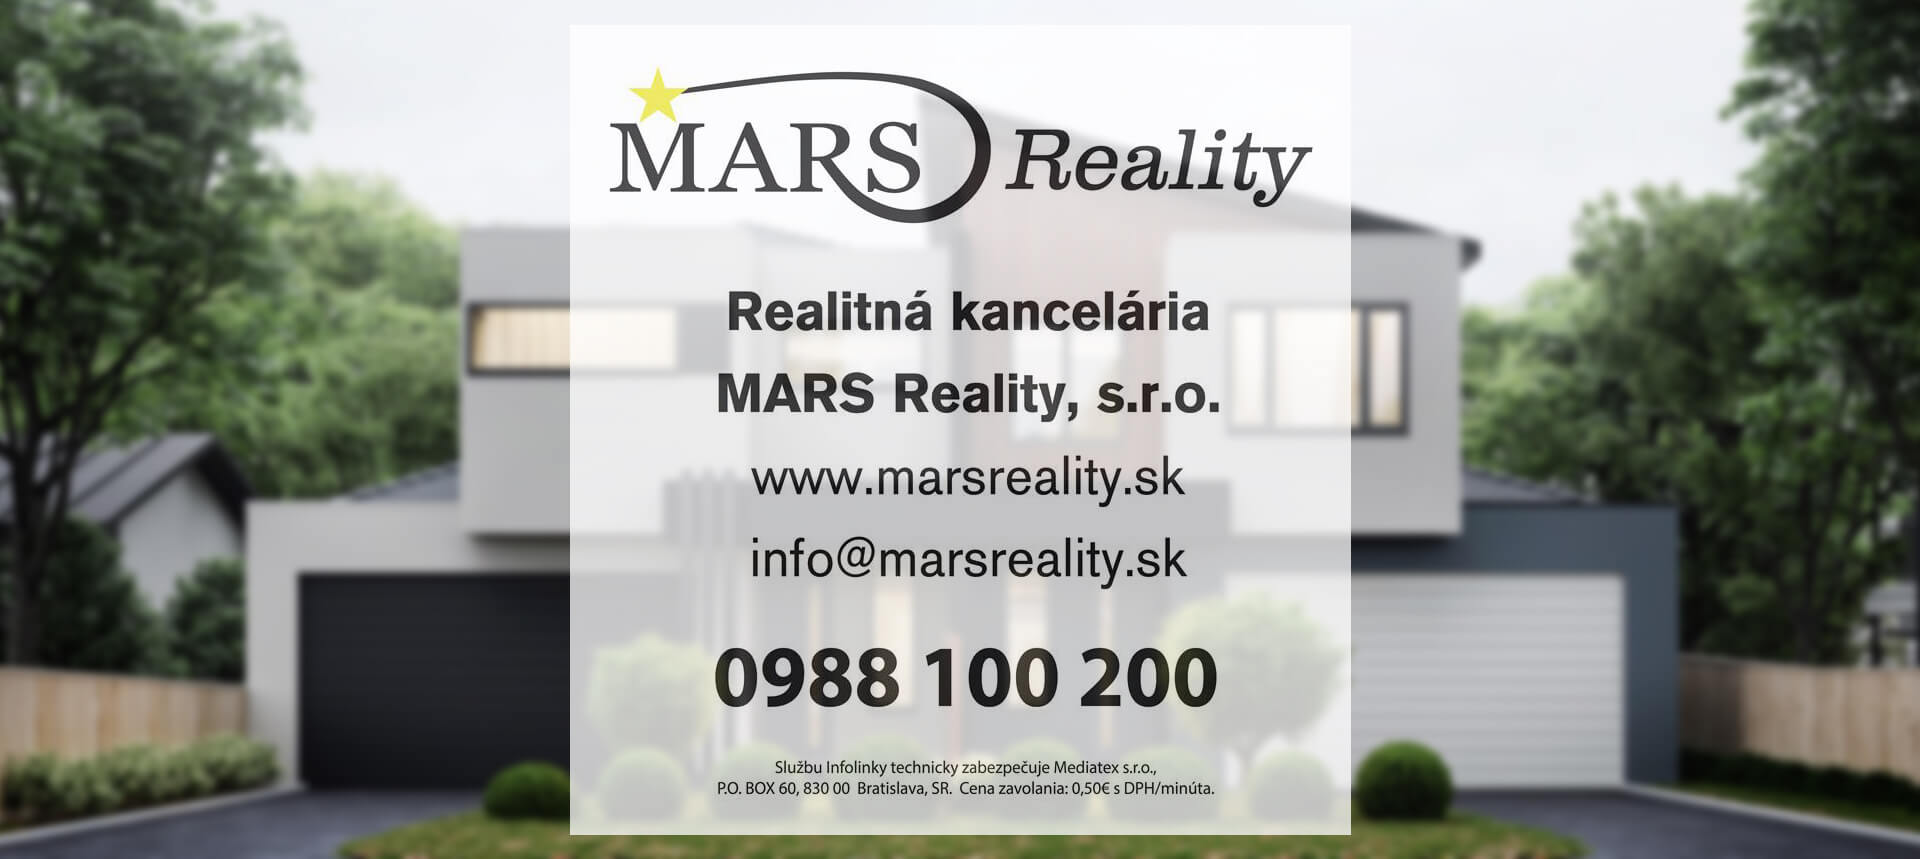 mars reality